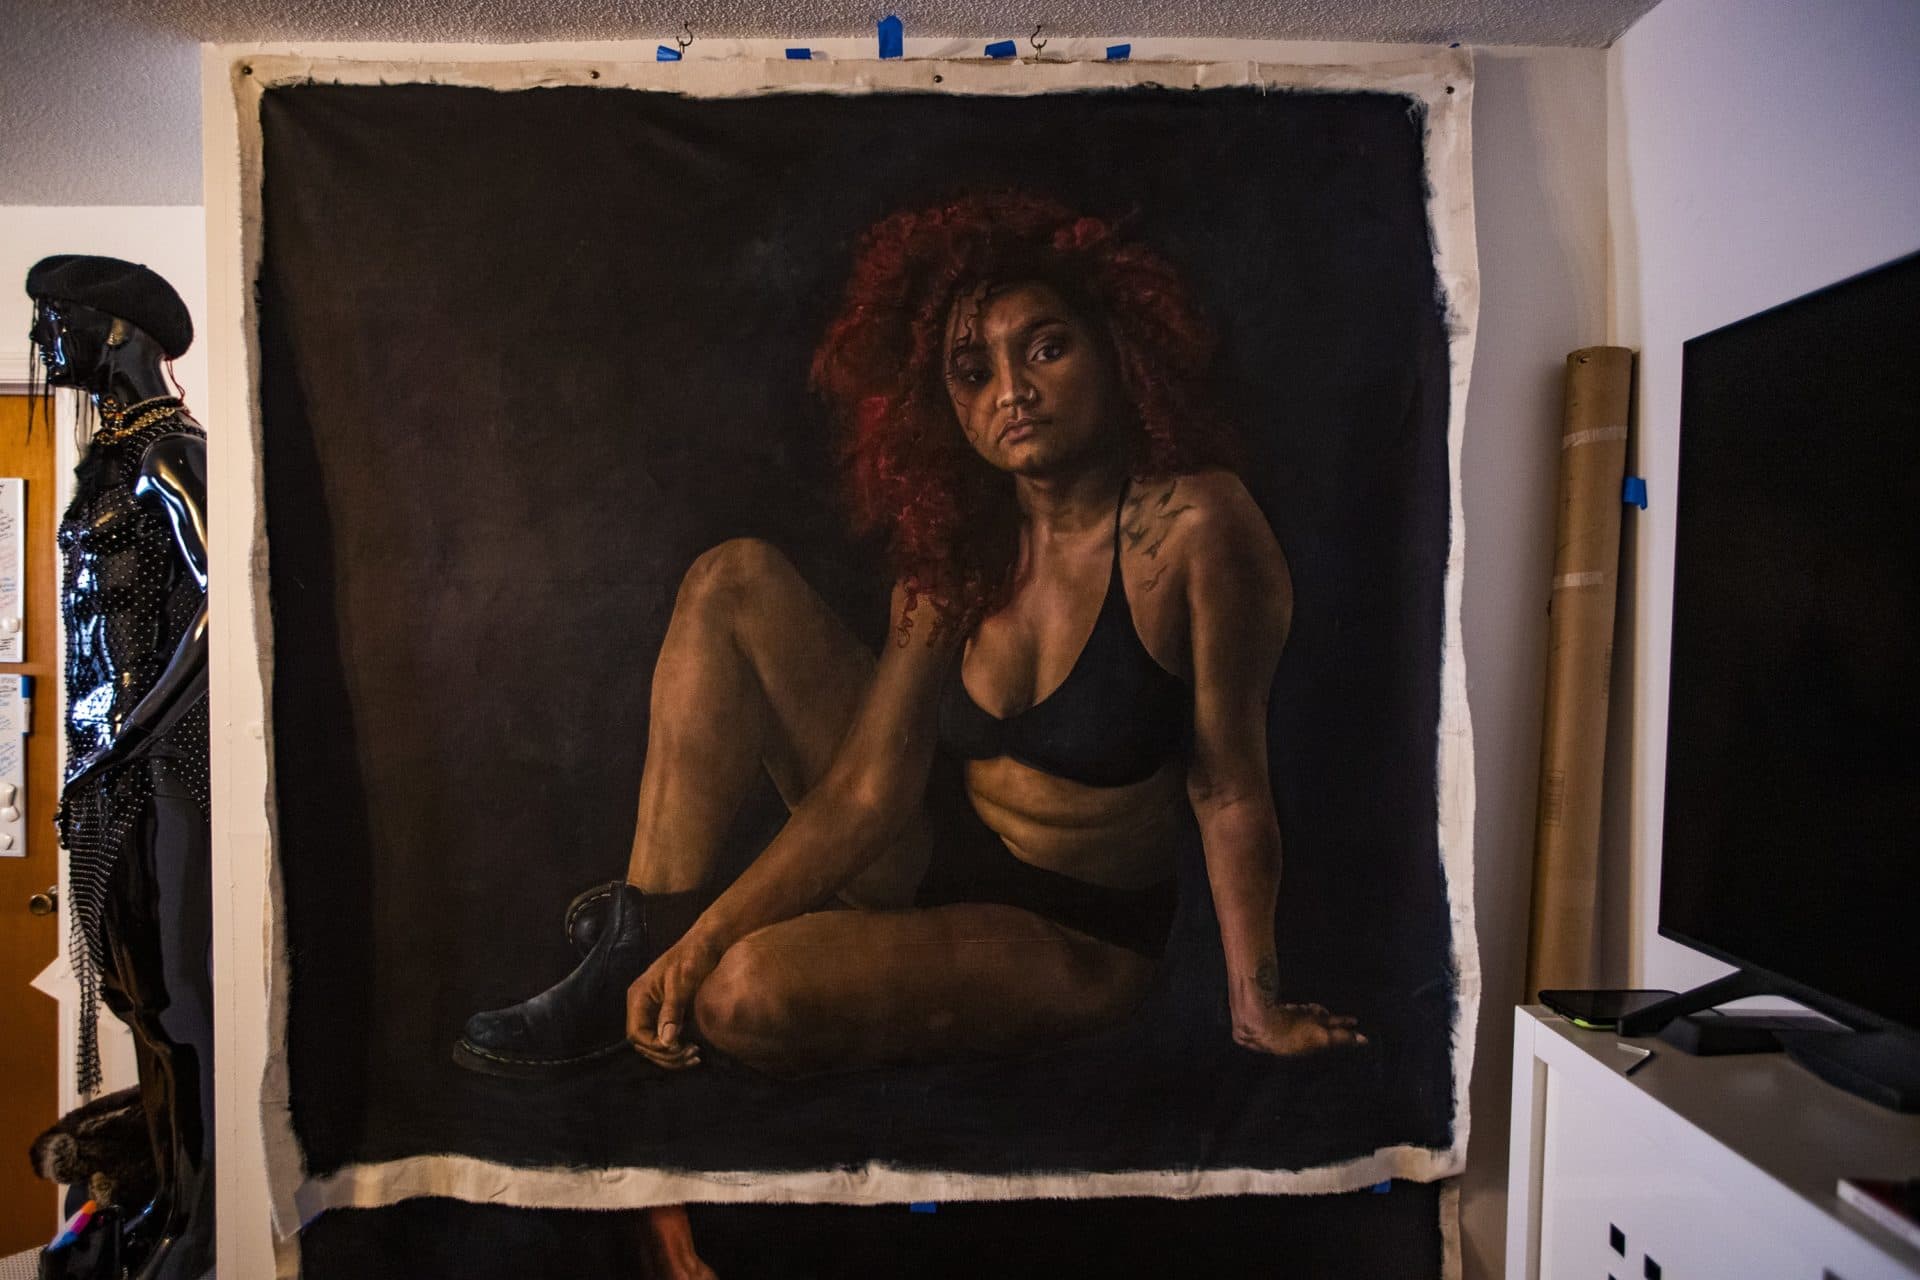 A portrait of Pearla Mabel hangs in Marla McLeod’s studio. (Jesse Costa/WBUR)